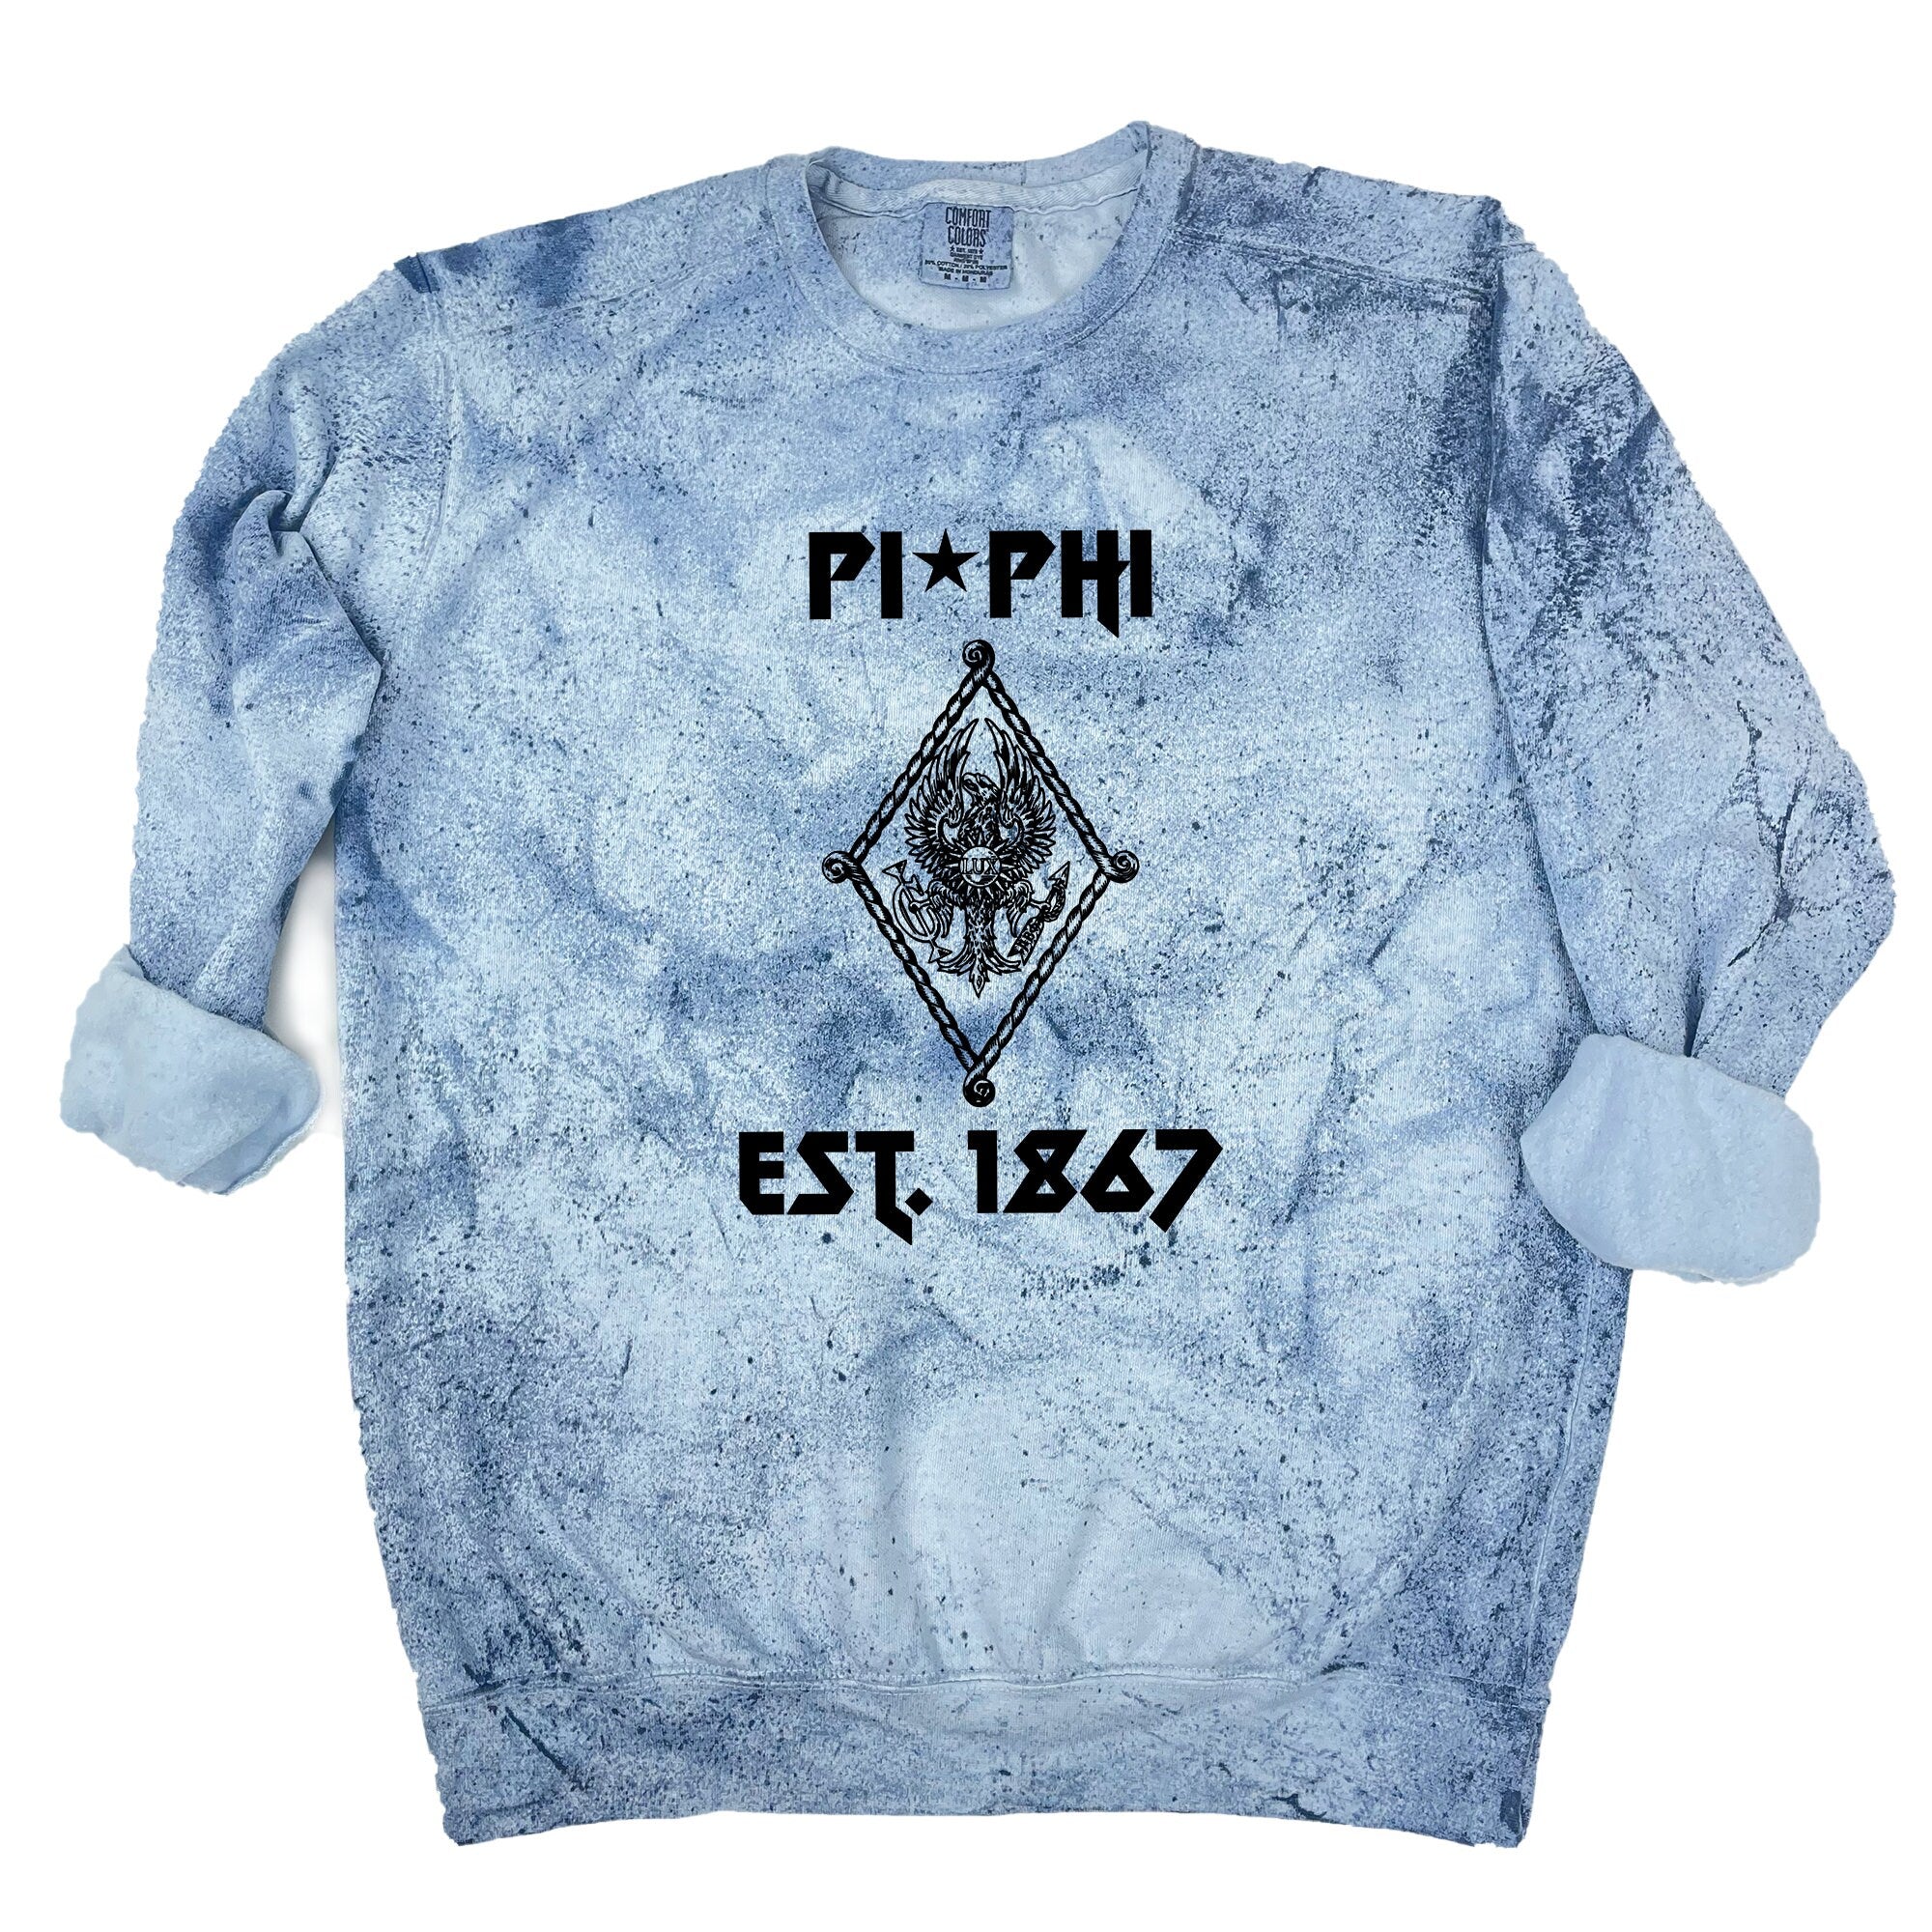 Pi Beta Phi Vintage Band Sweatshirt - Go Greek Chic